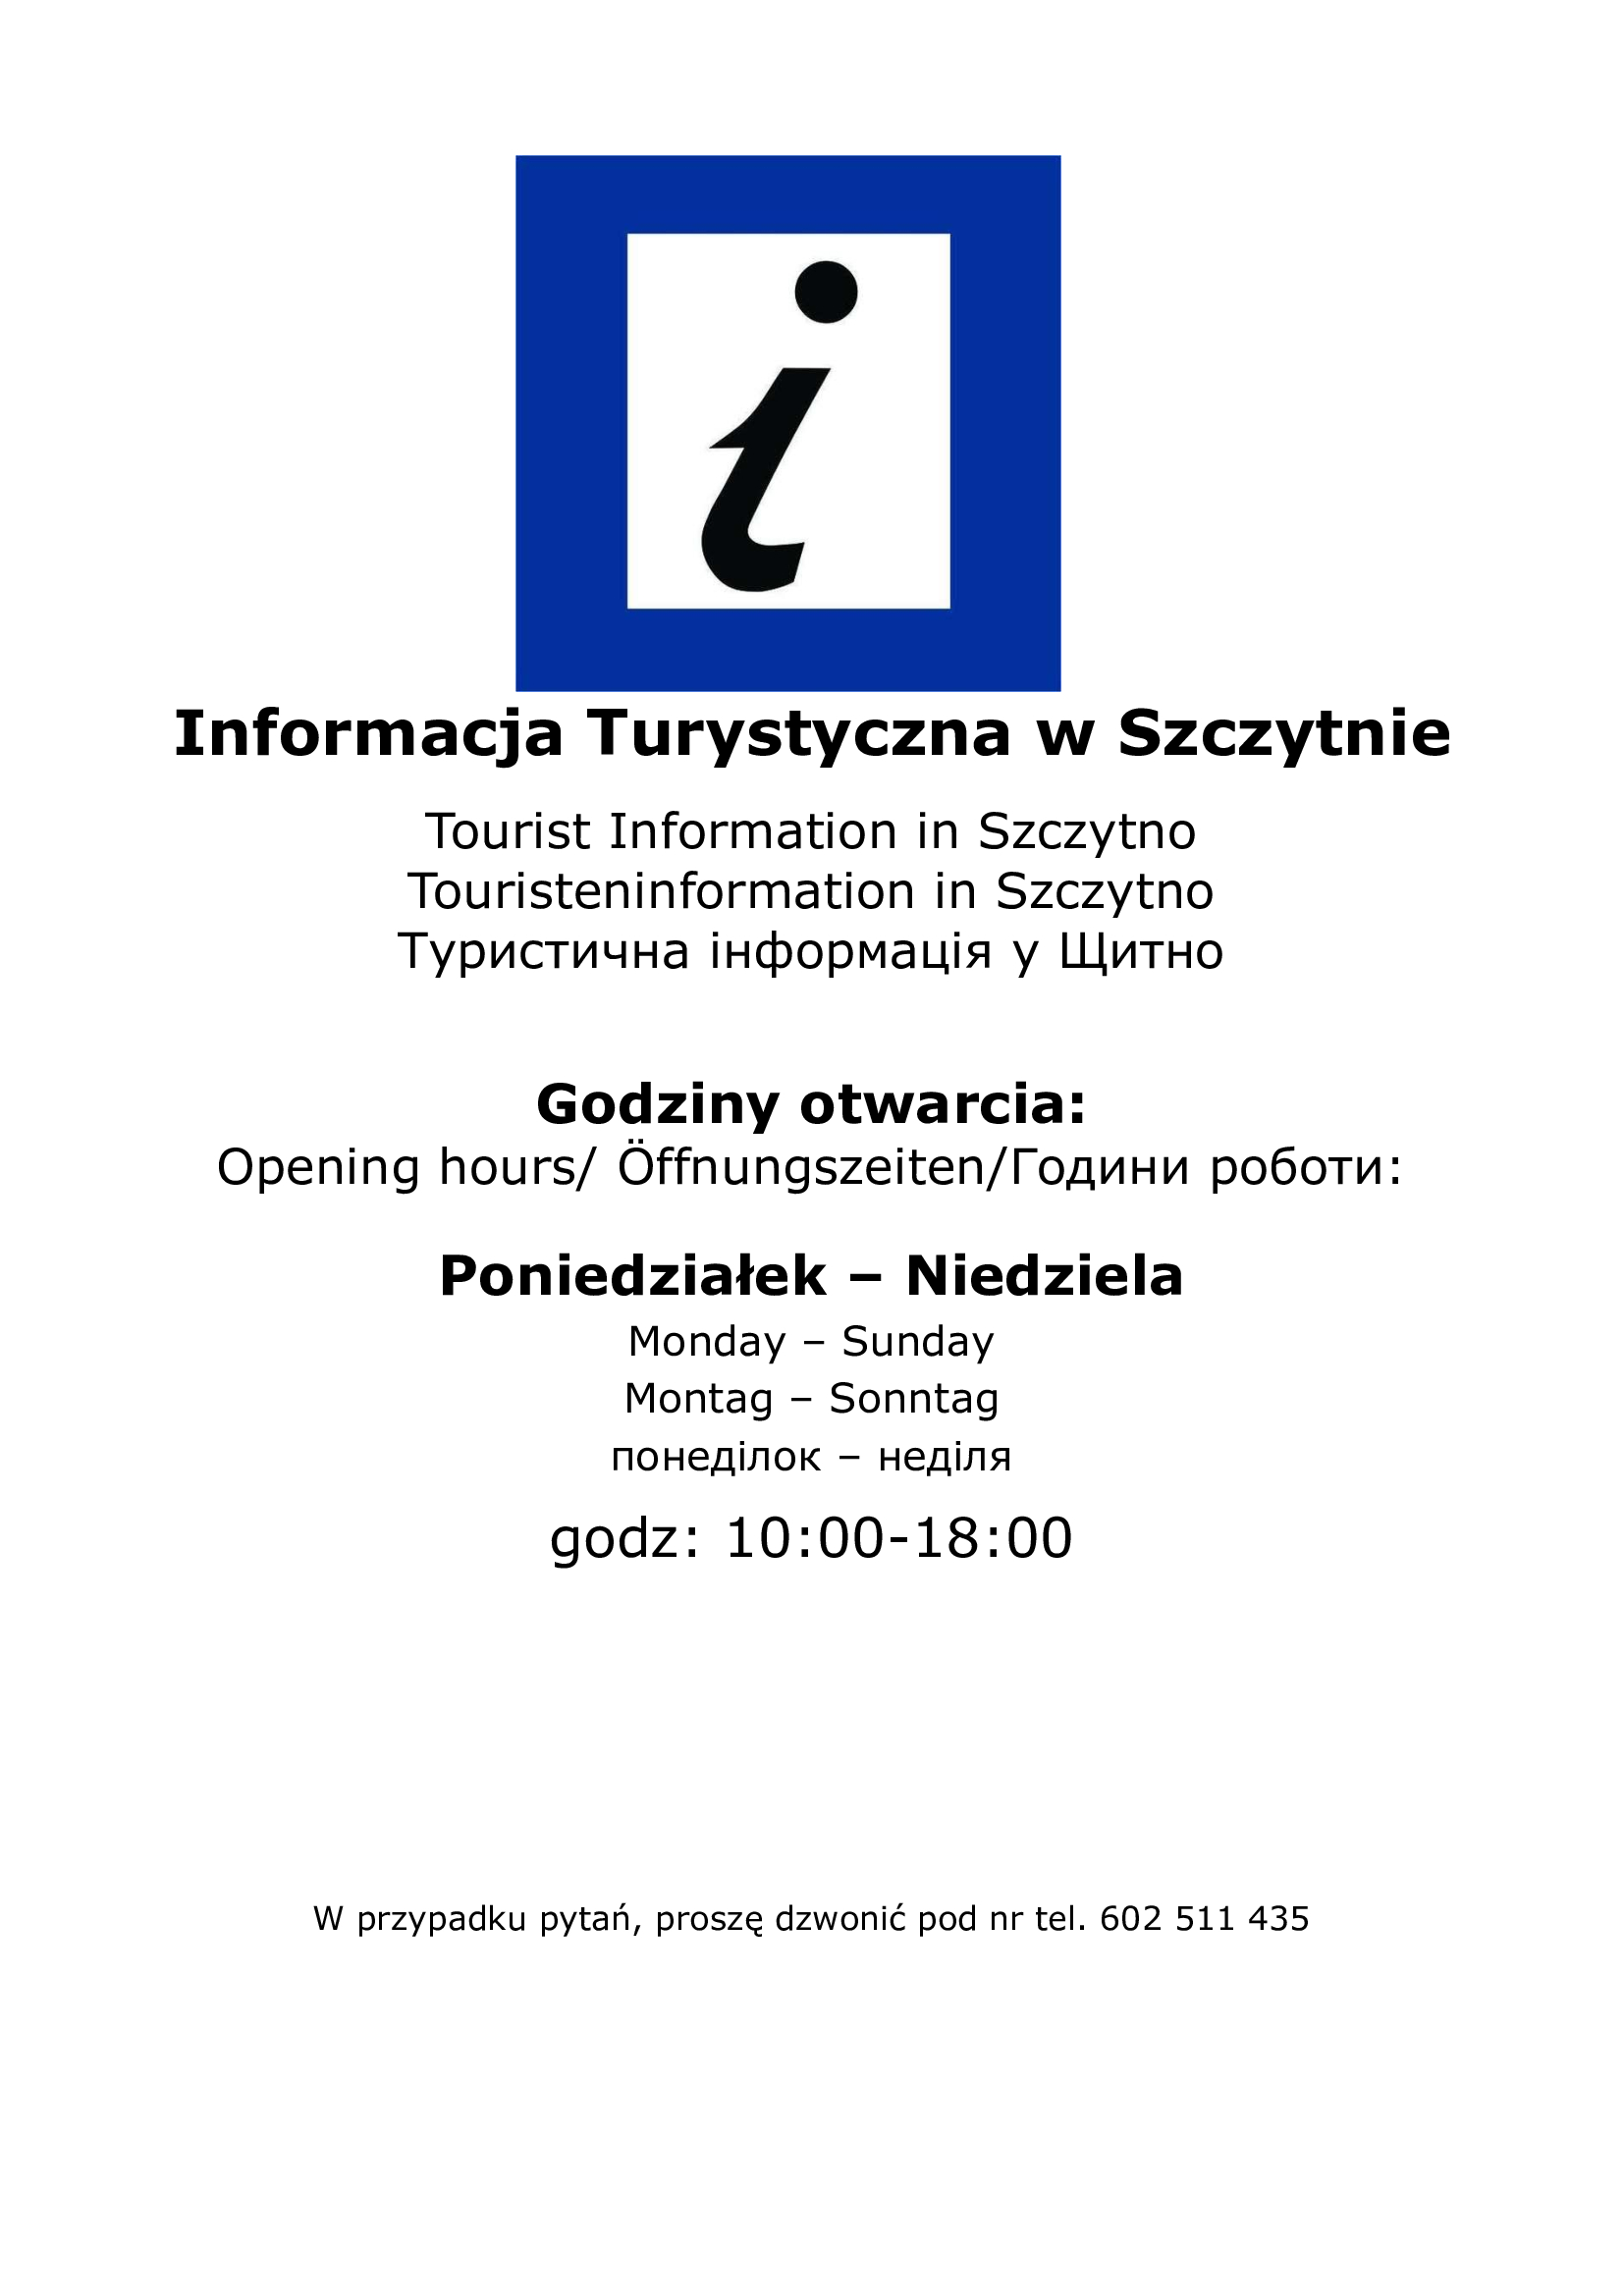 https://m.powiatszczycienski.pl/2022/06/orig/informacja-turystyczna-2022-51348.jpg